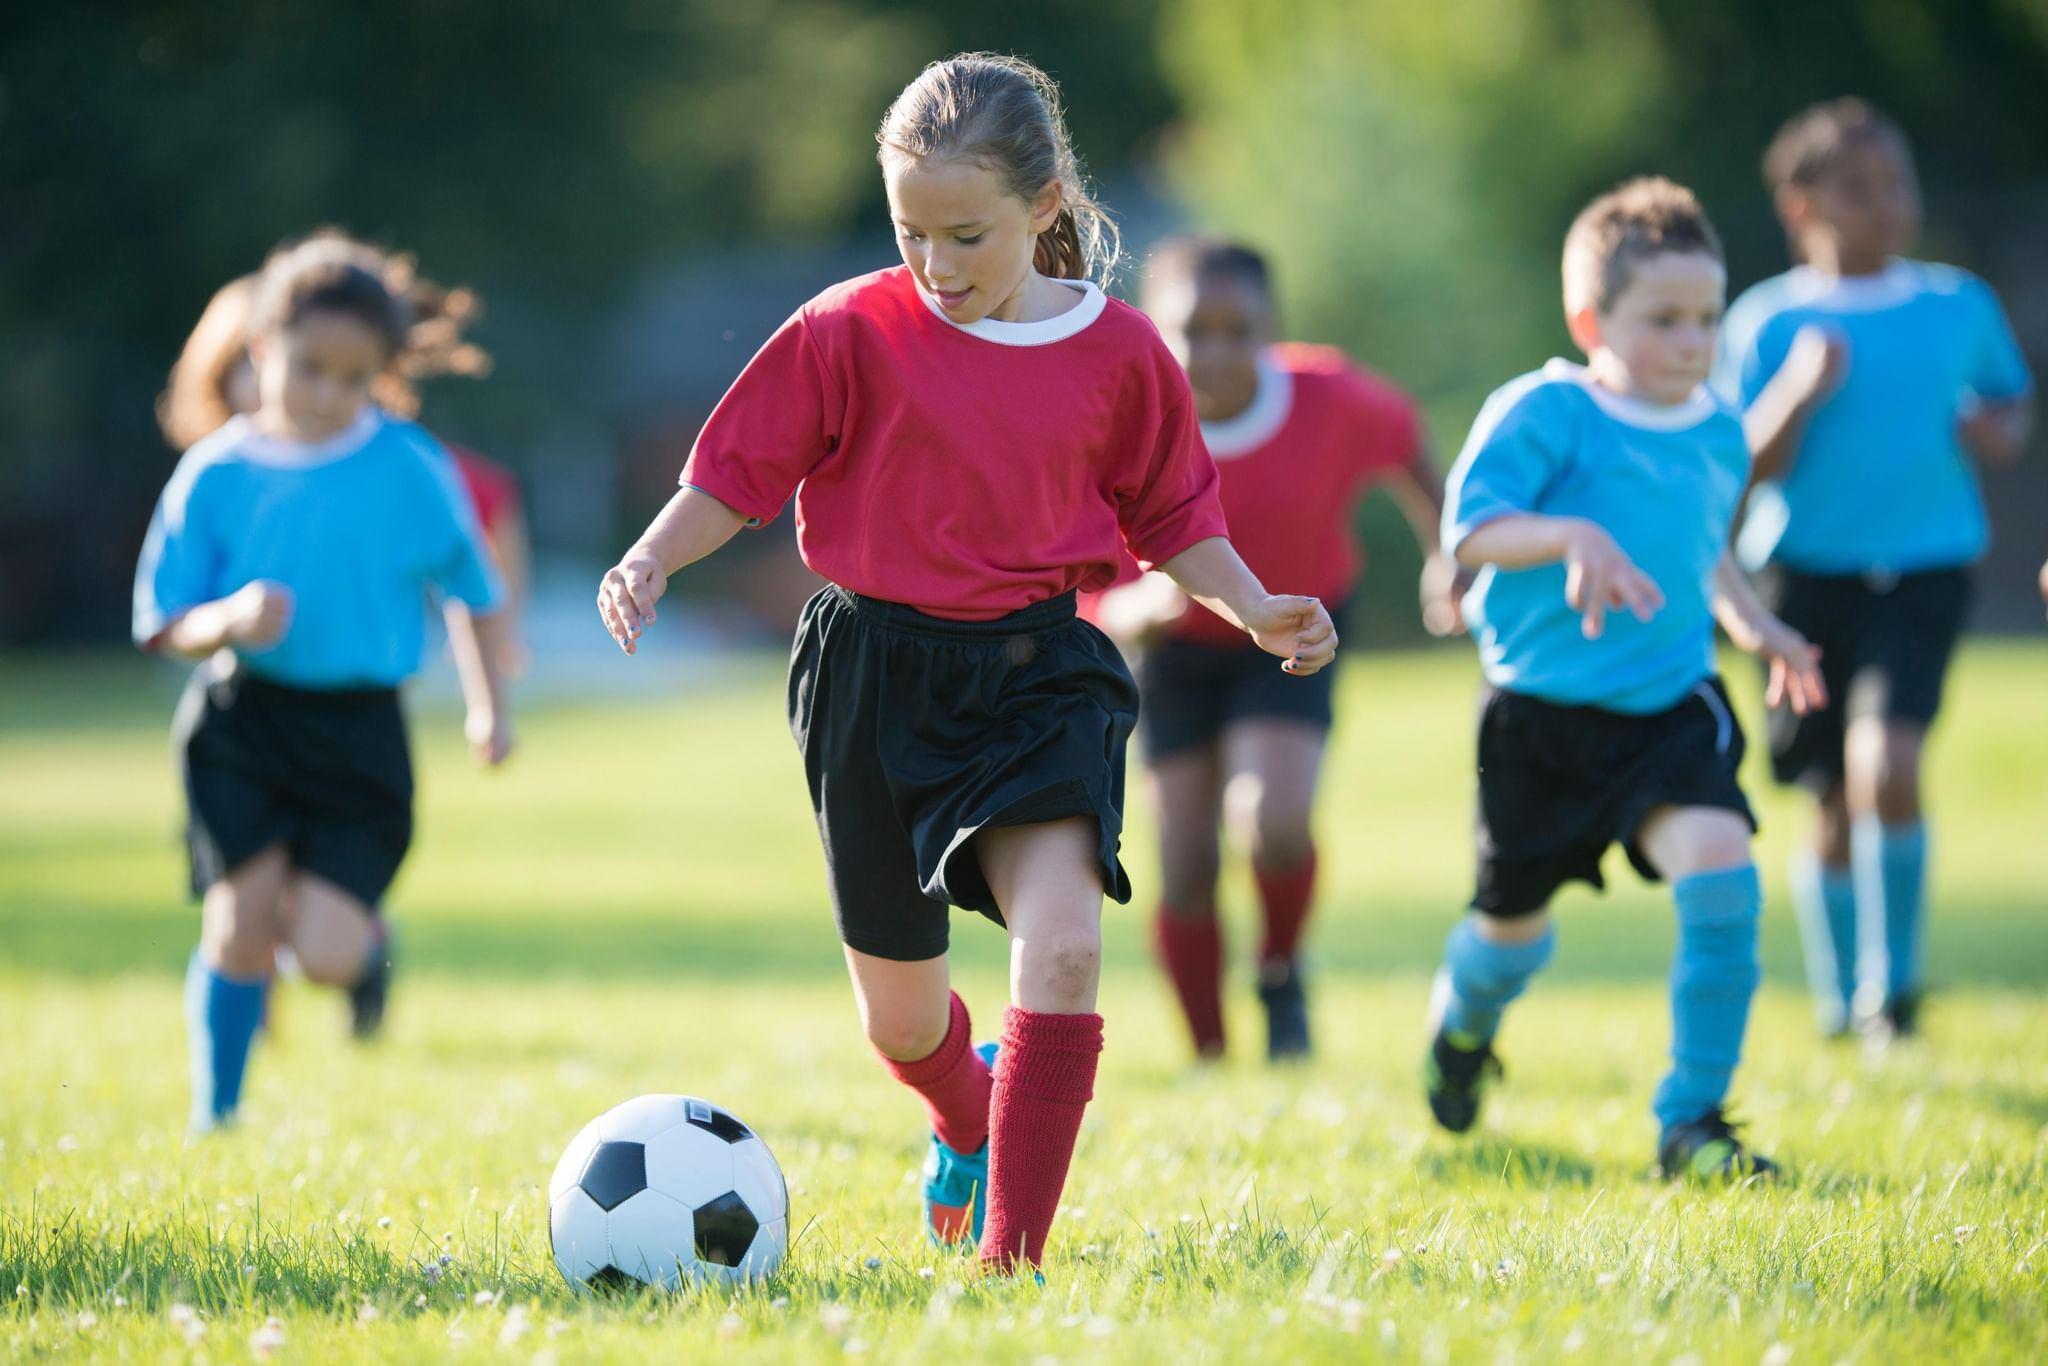 Гулять в футбол играть. Футбол дети. Спорт футбол дети. Ребенок играющий в футбол. Дети играют в футбол.